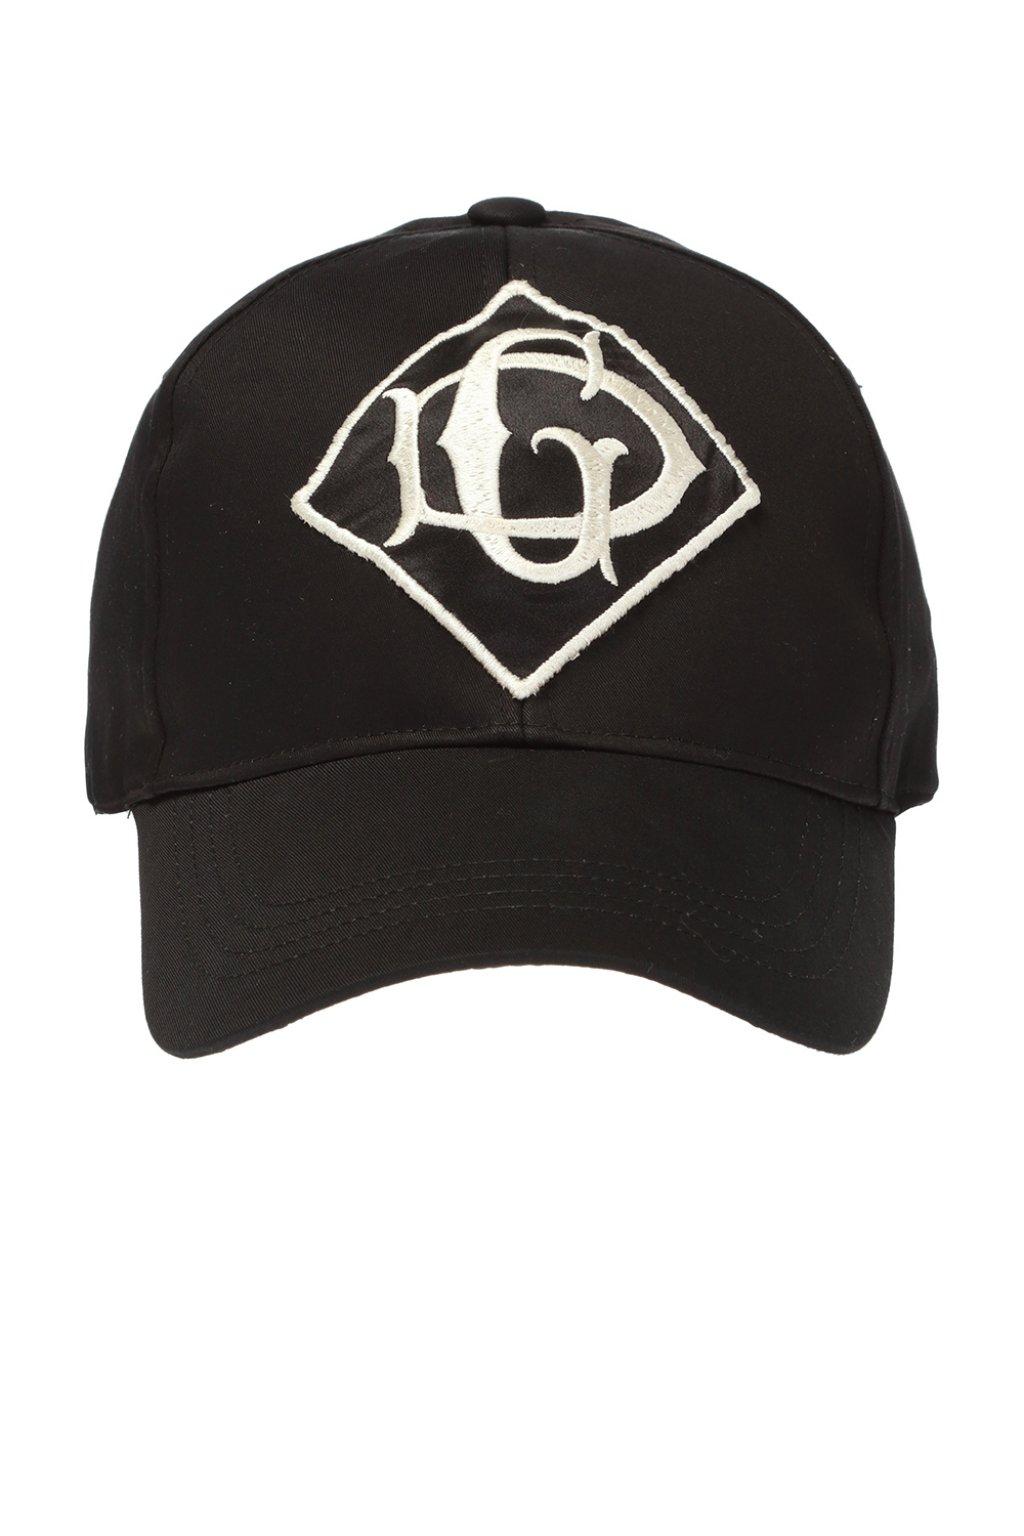 Dolce & Gabbana Cotton Branded Baseball Cap in Black for Men - Lyst